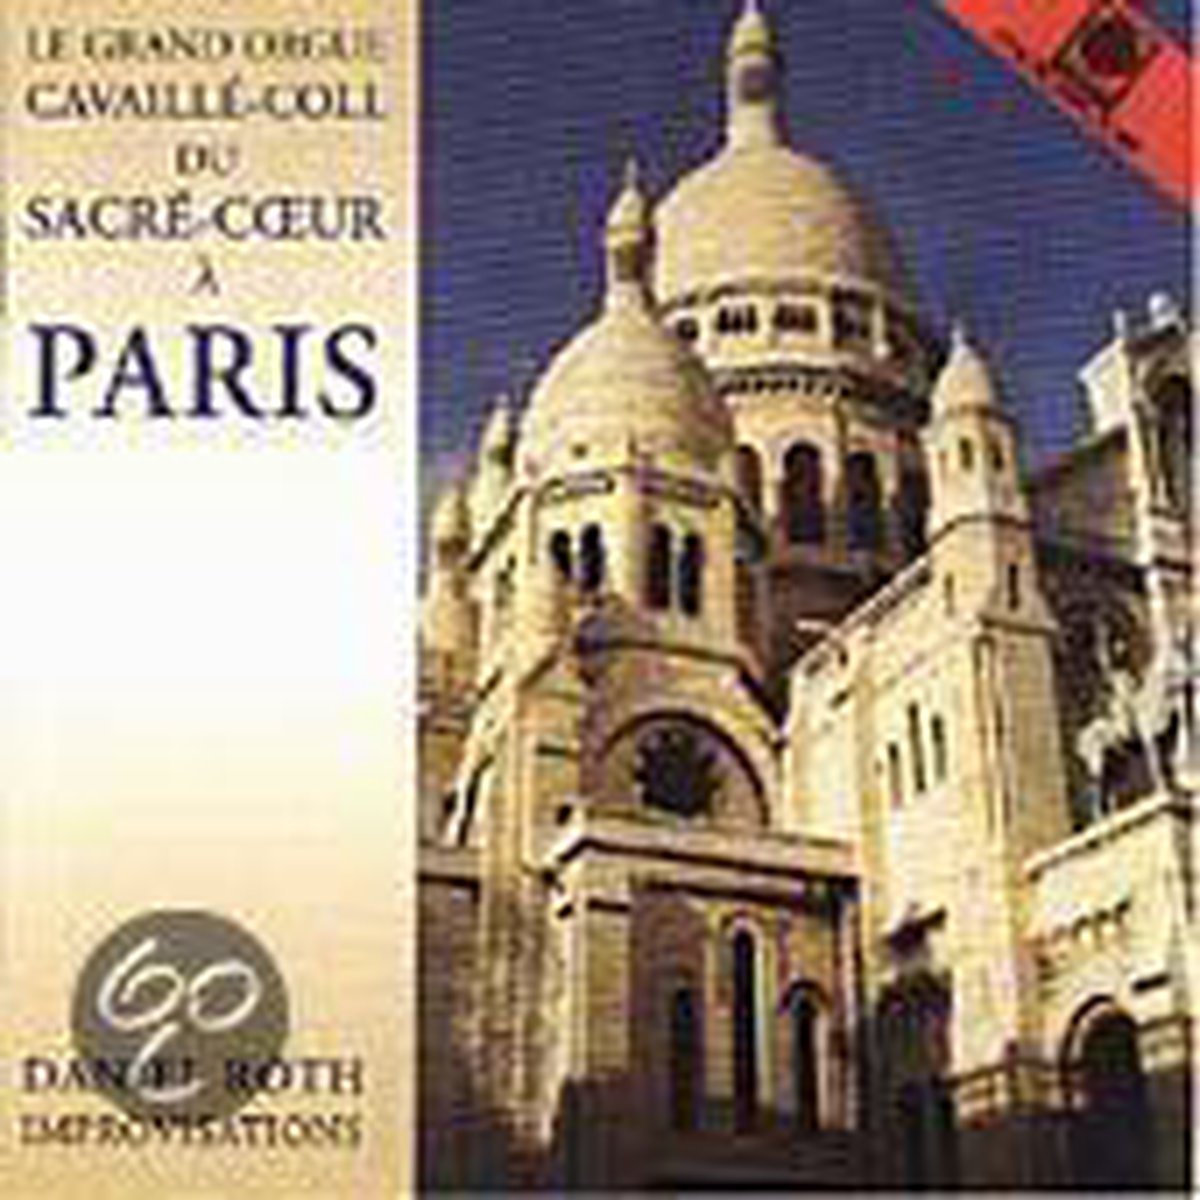 Le Grand Orgue Cavaille-Coll du SacreCoeur a Paris - Roth: Improvisations - Daniel Roth